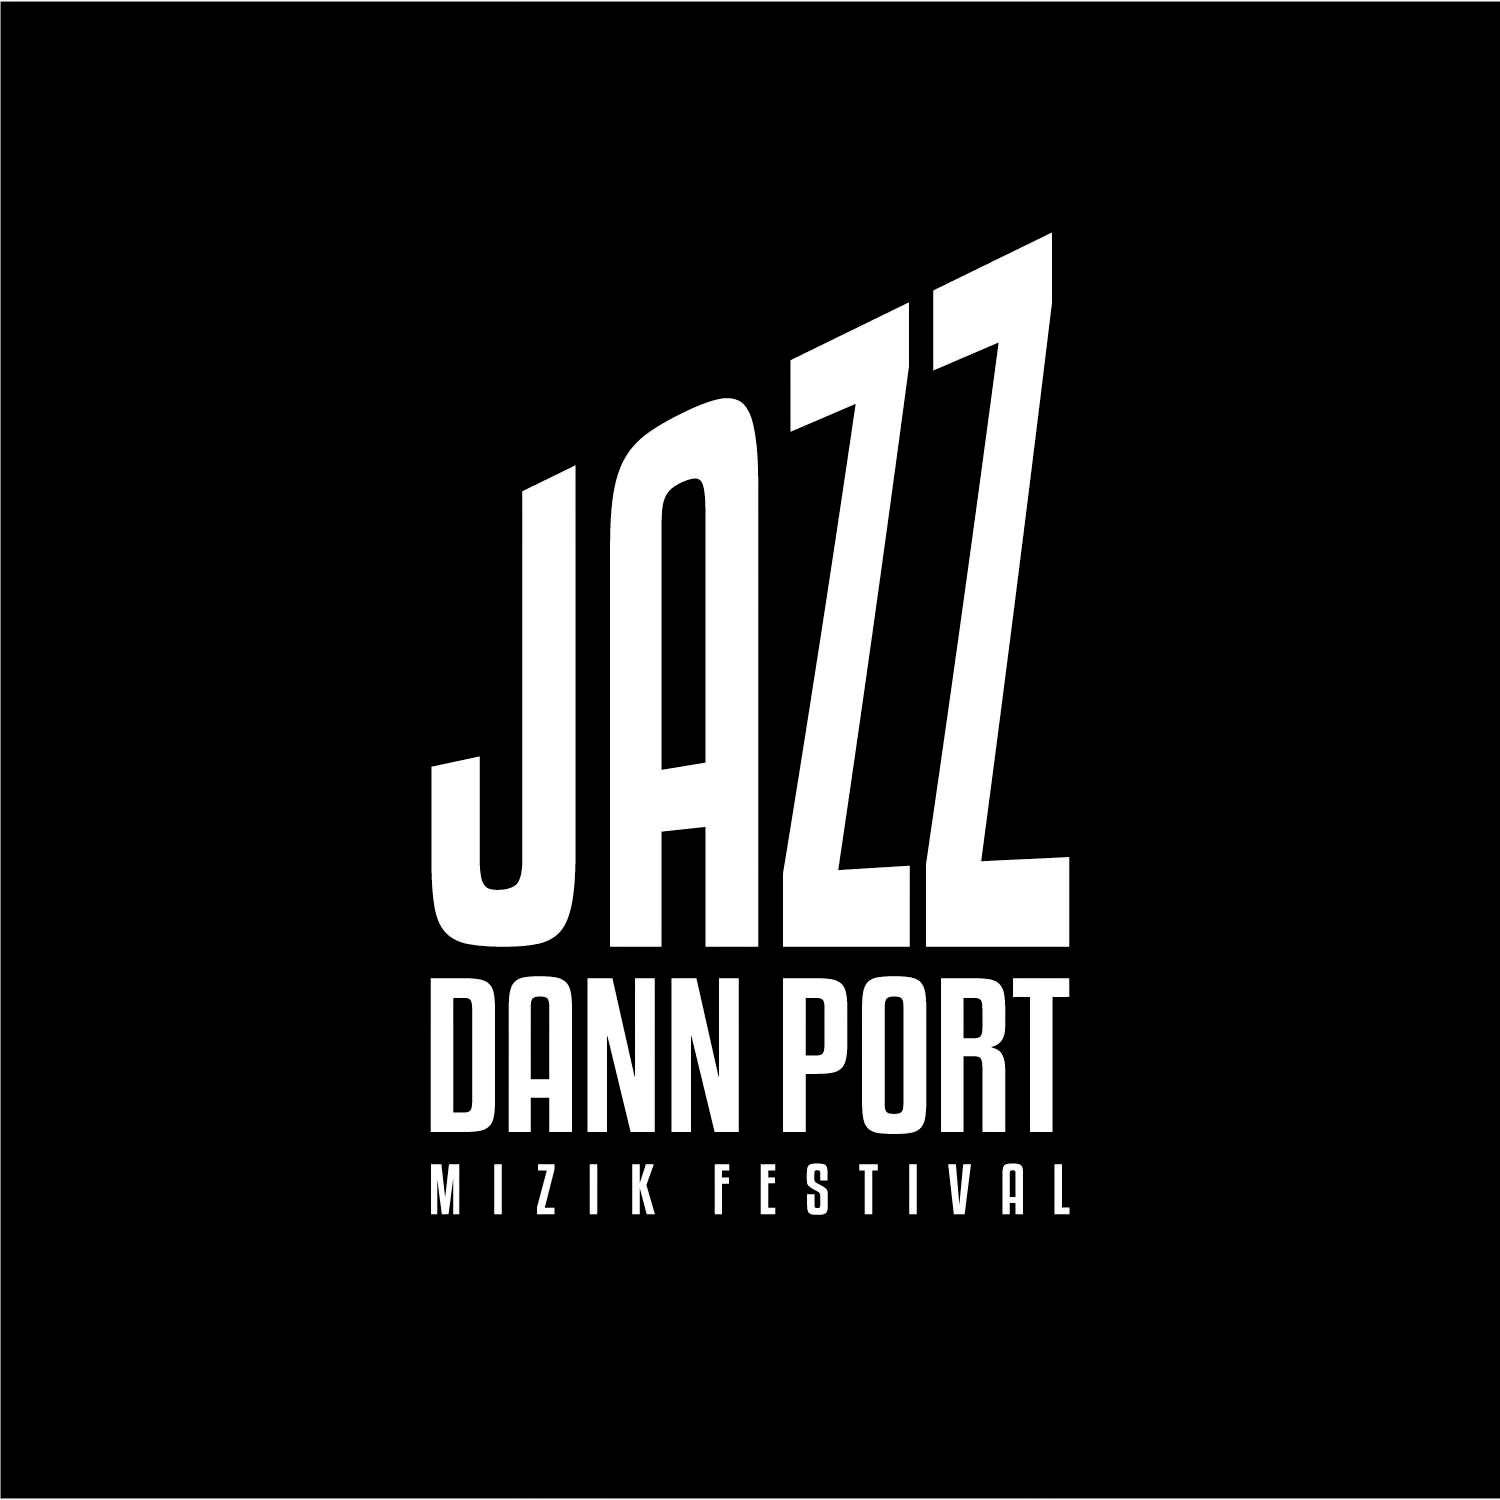 Jazz-Dann-Port-Festival-ville-du-port